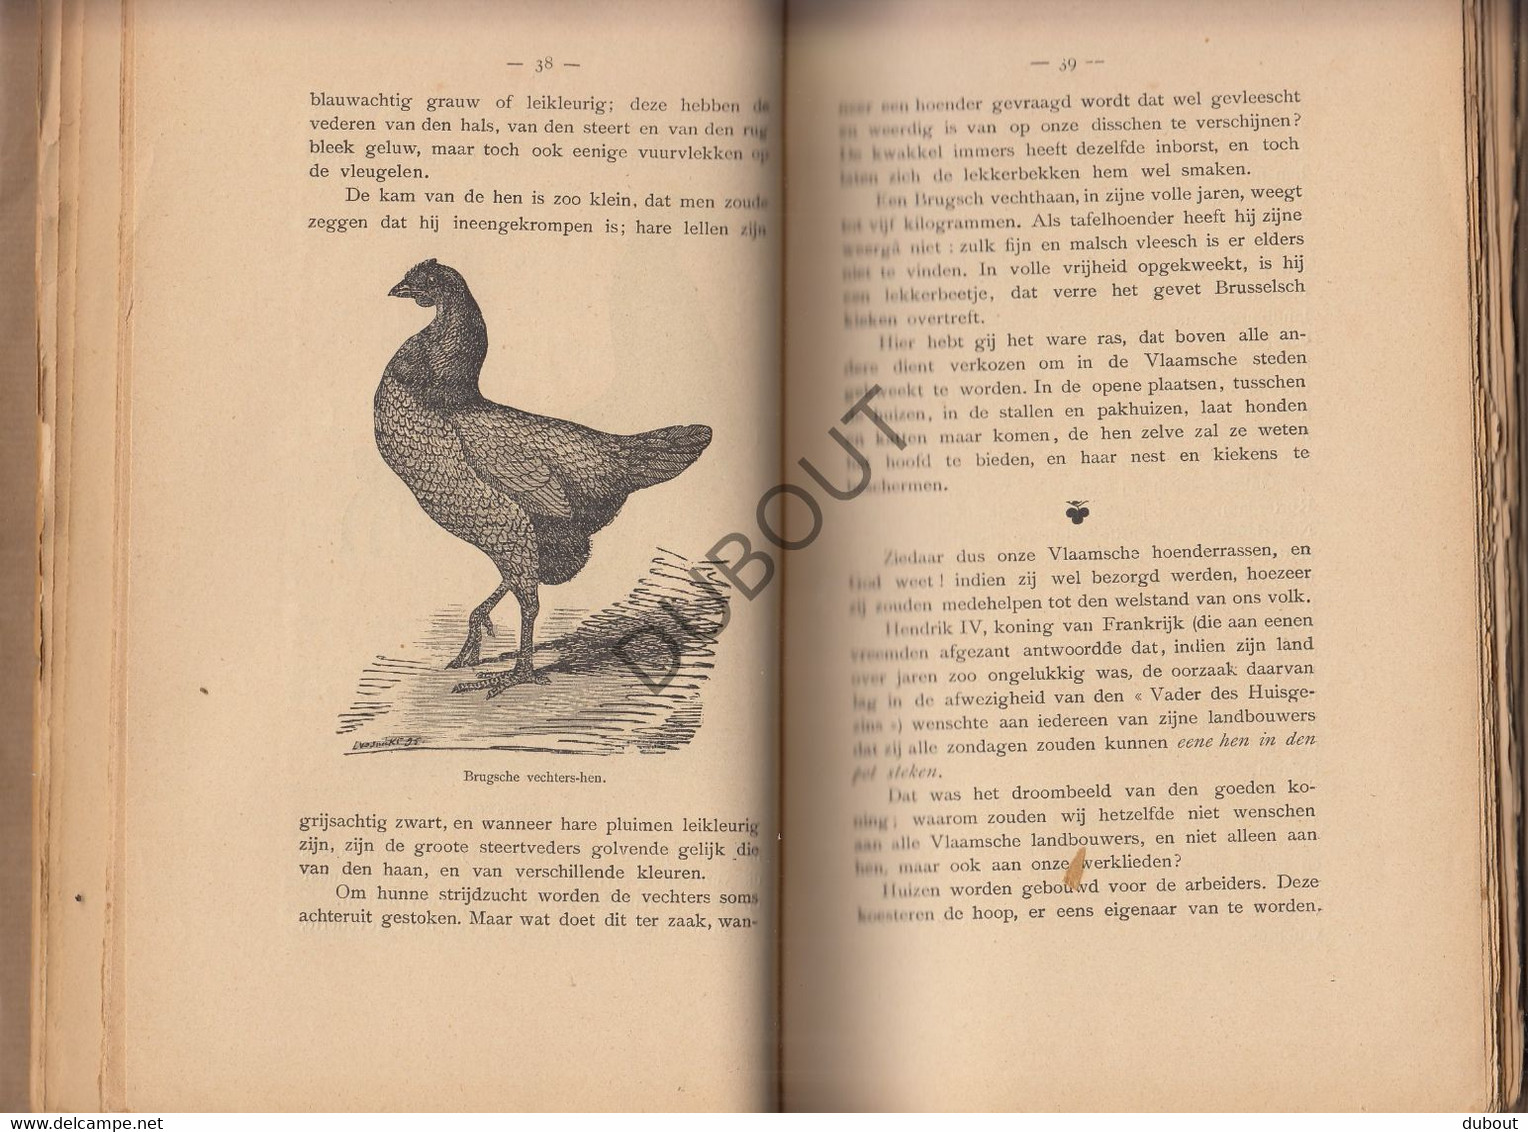 Het Vlaamsch Neerhof - Boerderij - A. Van Speybrouck - 1895 - Met talrijke illustraties in de tekst   (V1441)